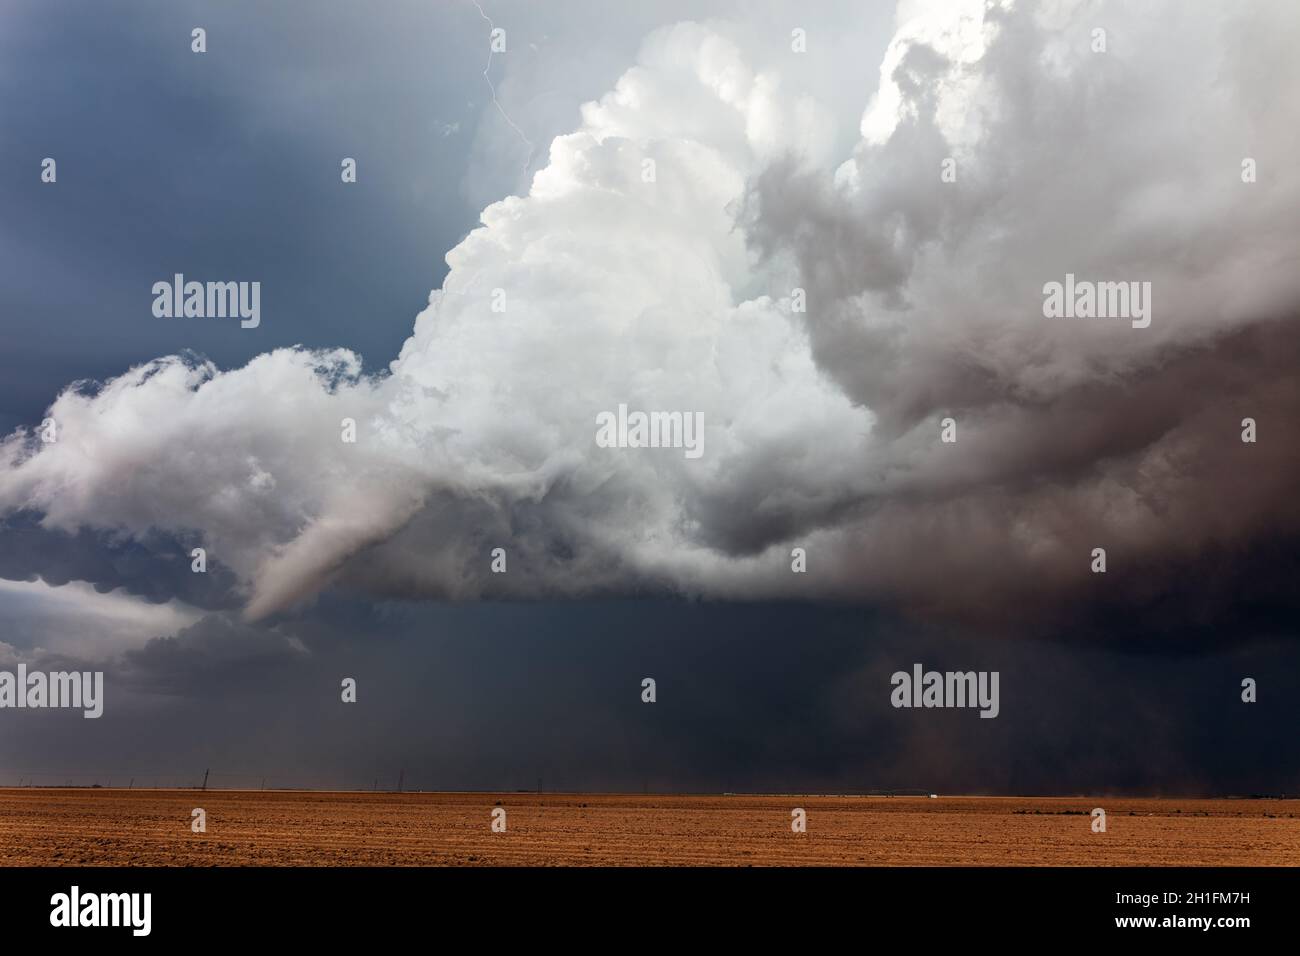 Un nuage d'entonnoir sous un orage supercellulaire cumulonimbus nuages au-dessus d'un champ près de Lubbock, Texas Banque D'Images